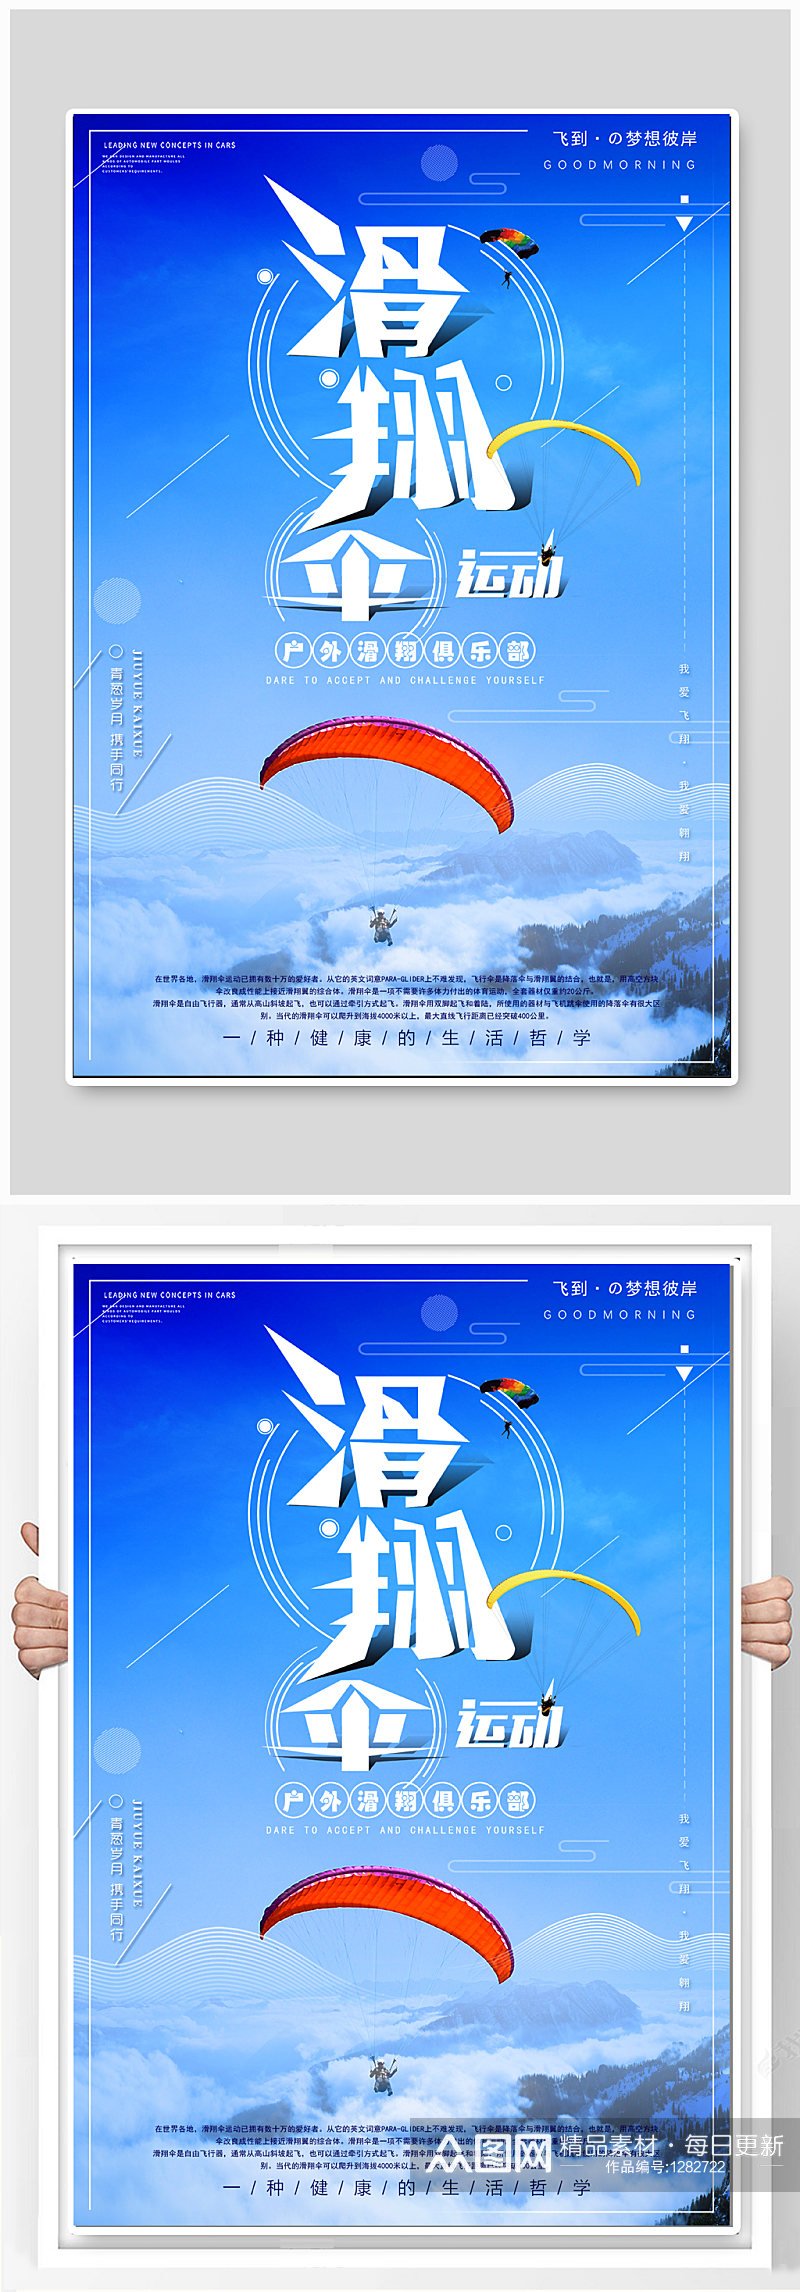 滑翔伞体育运动海报素材